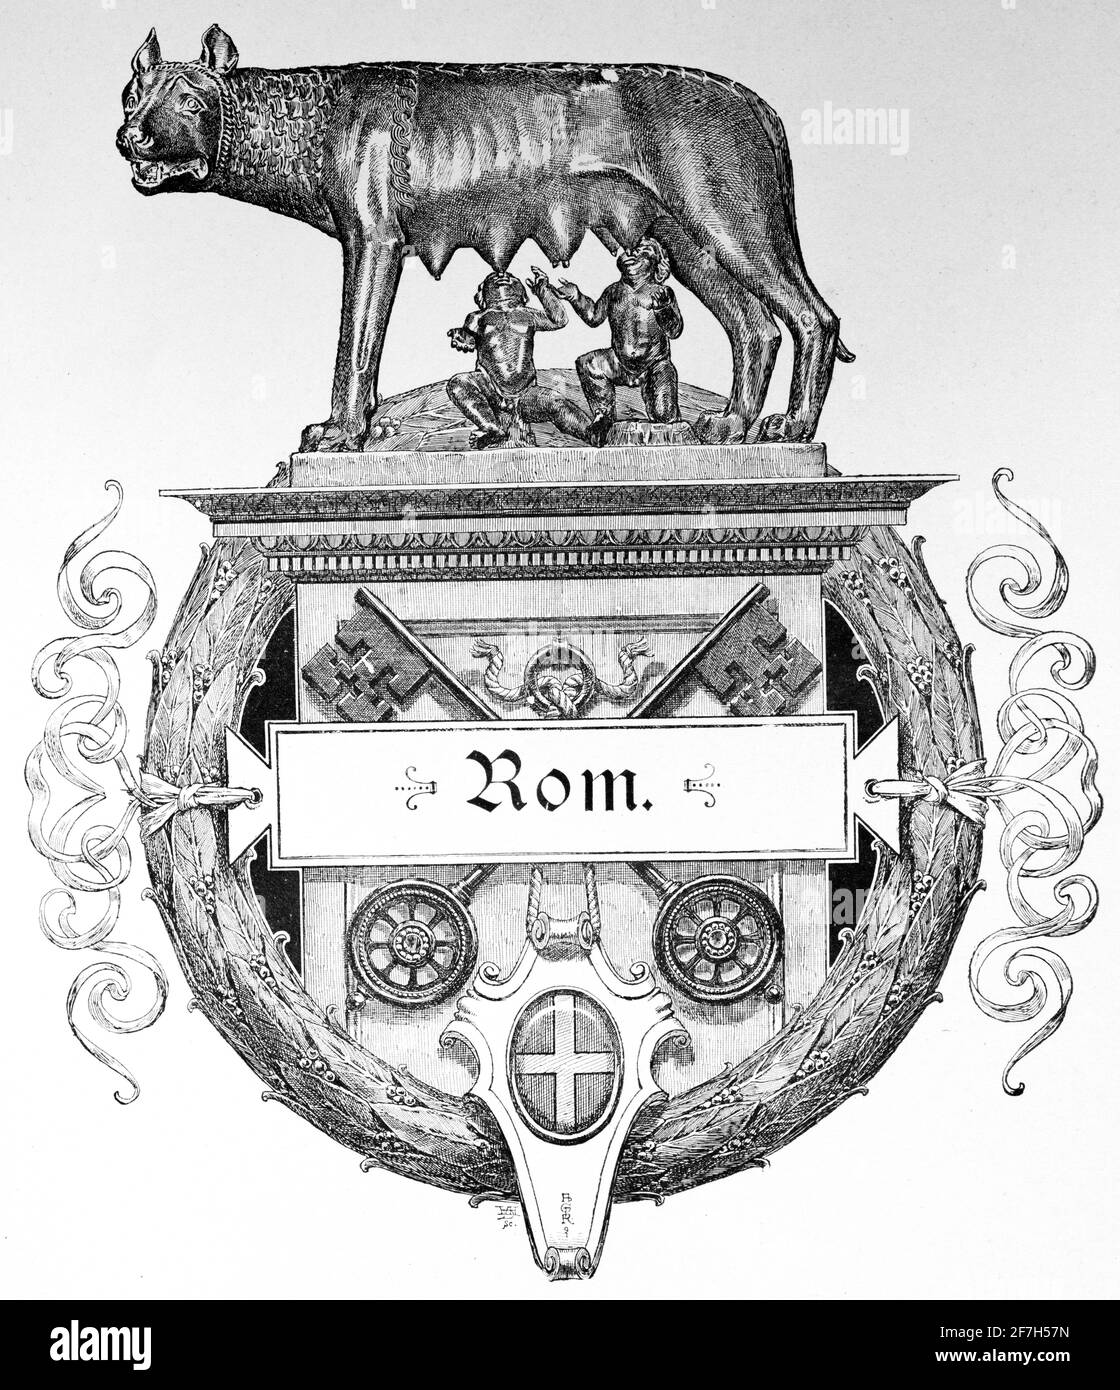 Frontispice avec l'histoire de la fondation de Rome avec le loup-she nourrissant les jumeaux Romulus et Remus, Rome, Italie, Europe du Sud Banque D'Images